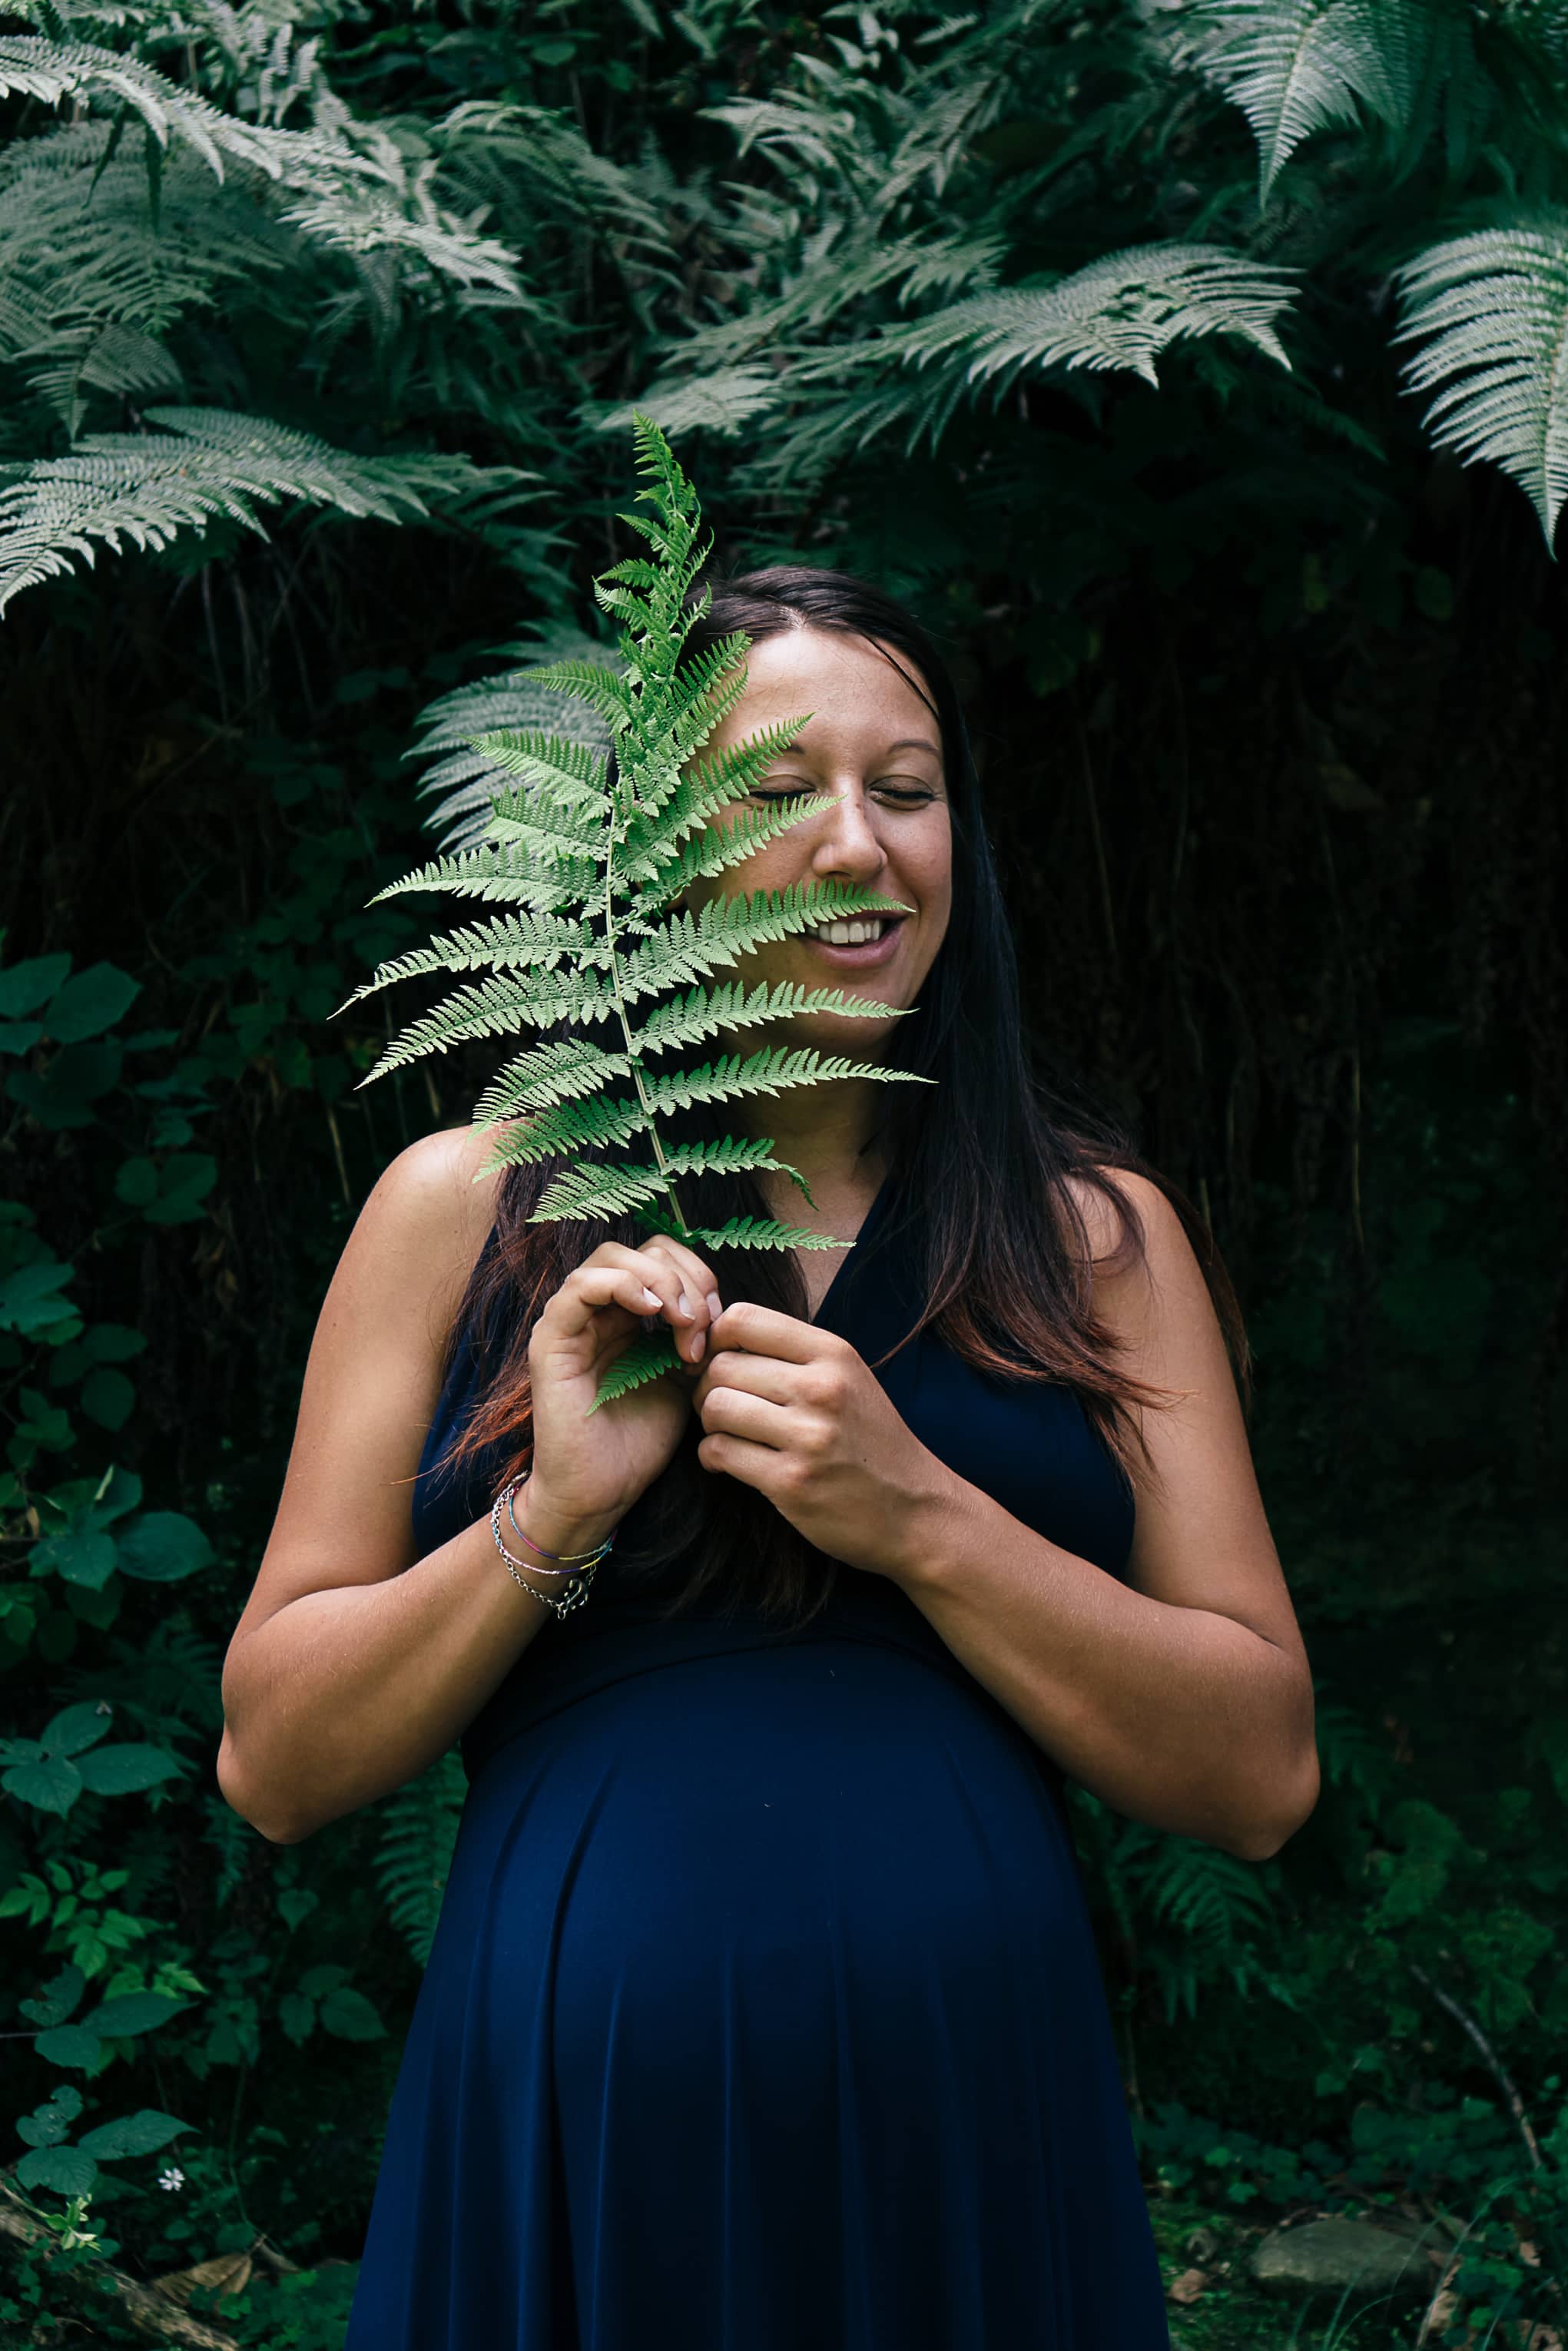 Valeria, versteckt hinter einem Farnblatt, während des Schwangerschaftshootings